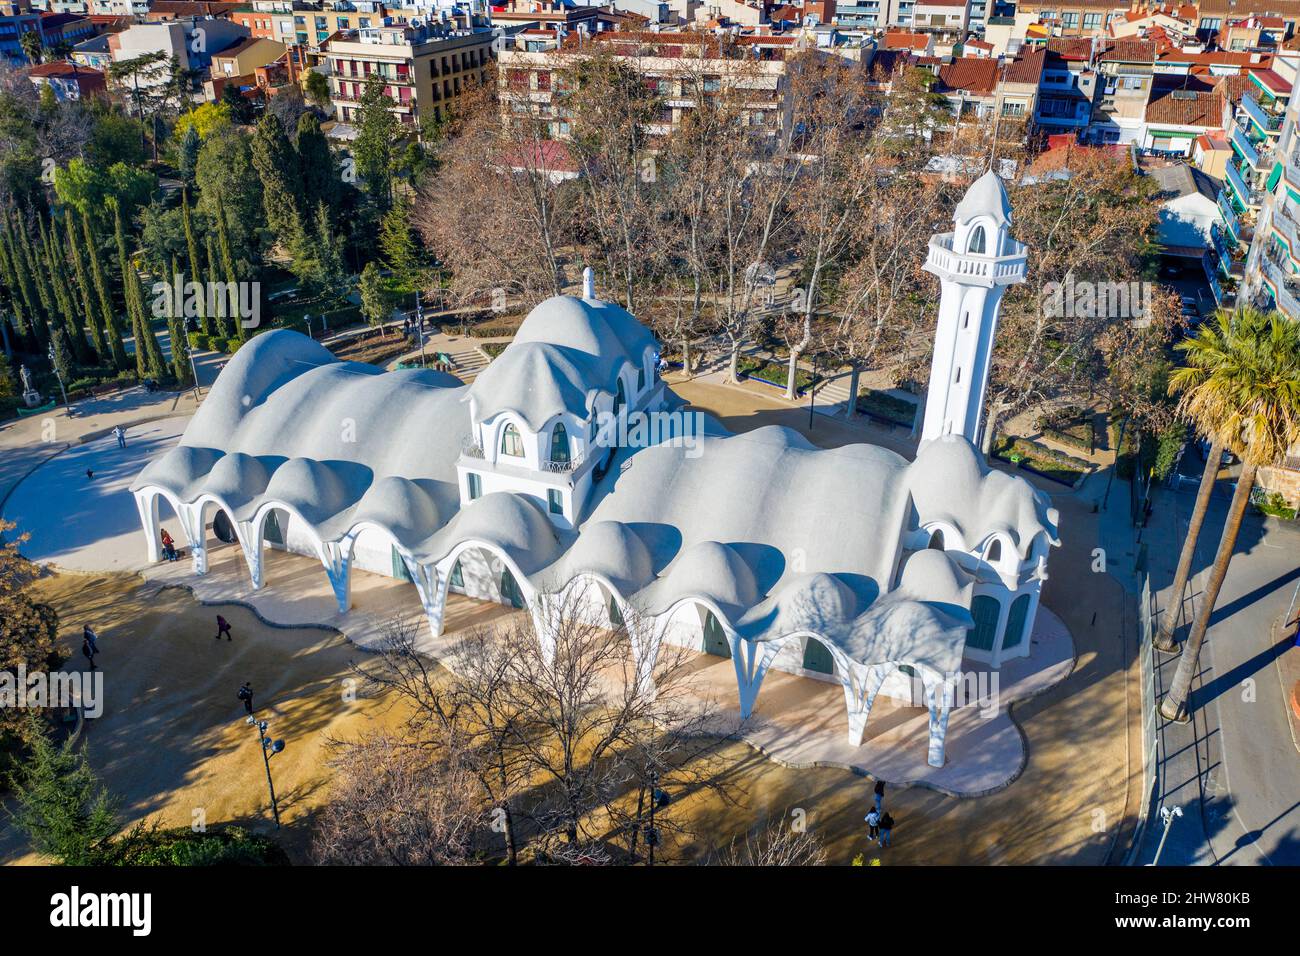 Masia Freixa ( 1907 ). Bâtiment moderniste inspiré par Gaudí. Lluis Moncunill architecte. Parc de Sant Jordi, Terrassa, Catalogne. Espagne. Banque D'Images